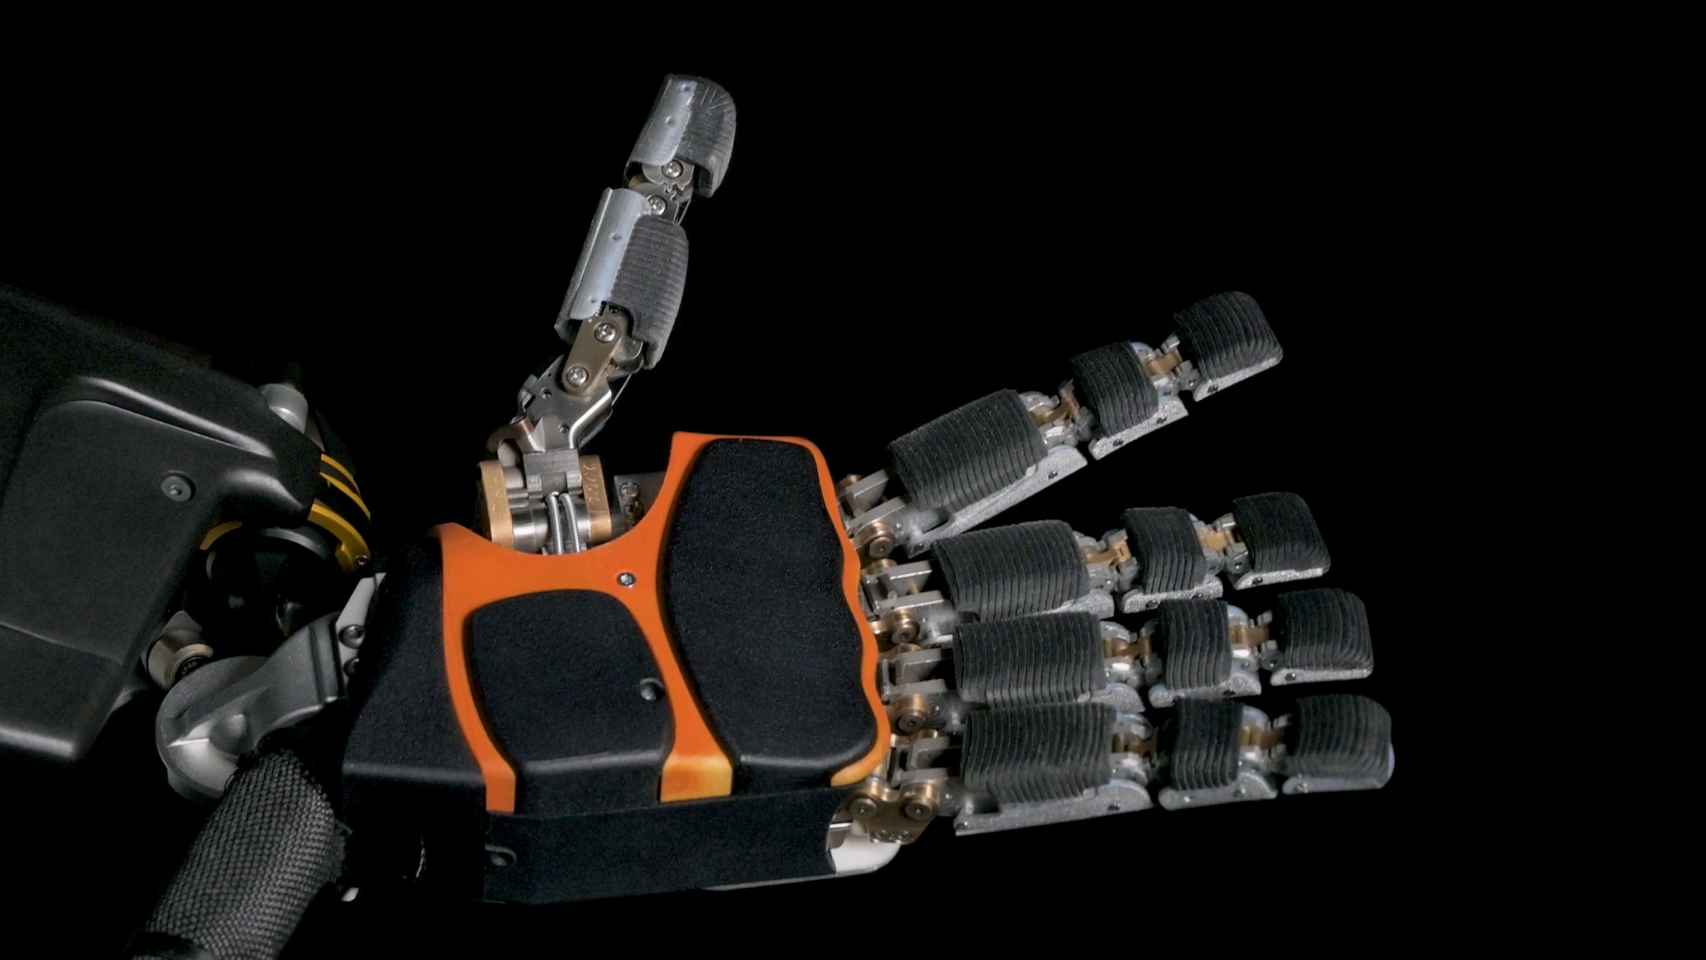 Las manos de Phoenix son uno de los mayores avances en robótica